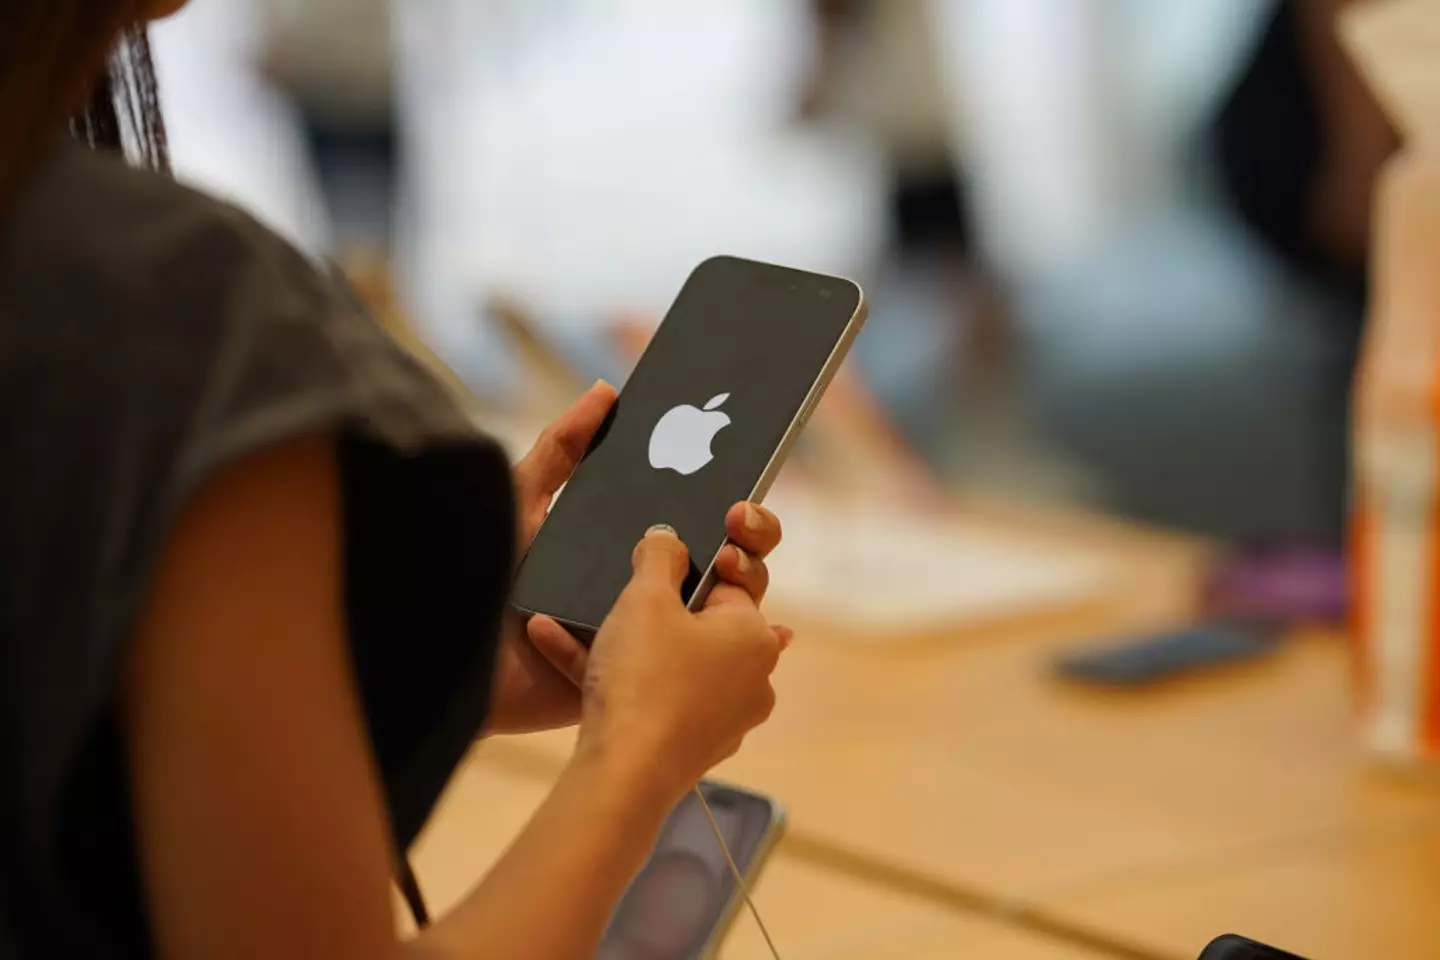 Some Reddit users have argued that Apple doesn't make phones without cameras (Serene Lee/SOPA Images/LightRocket via Getty Images)